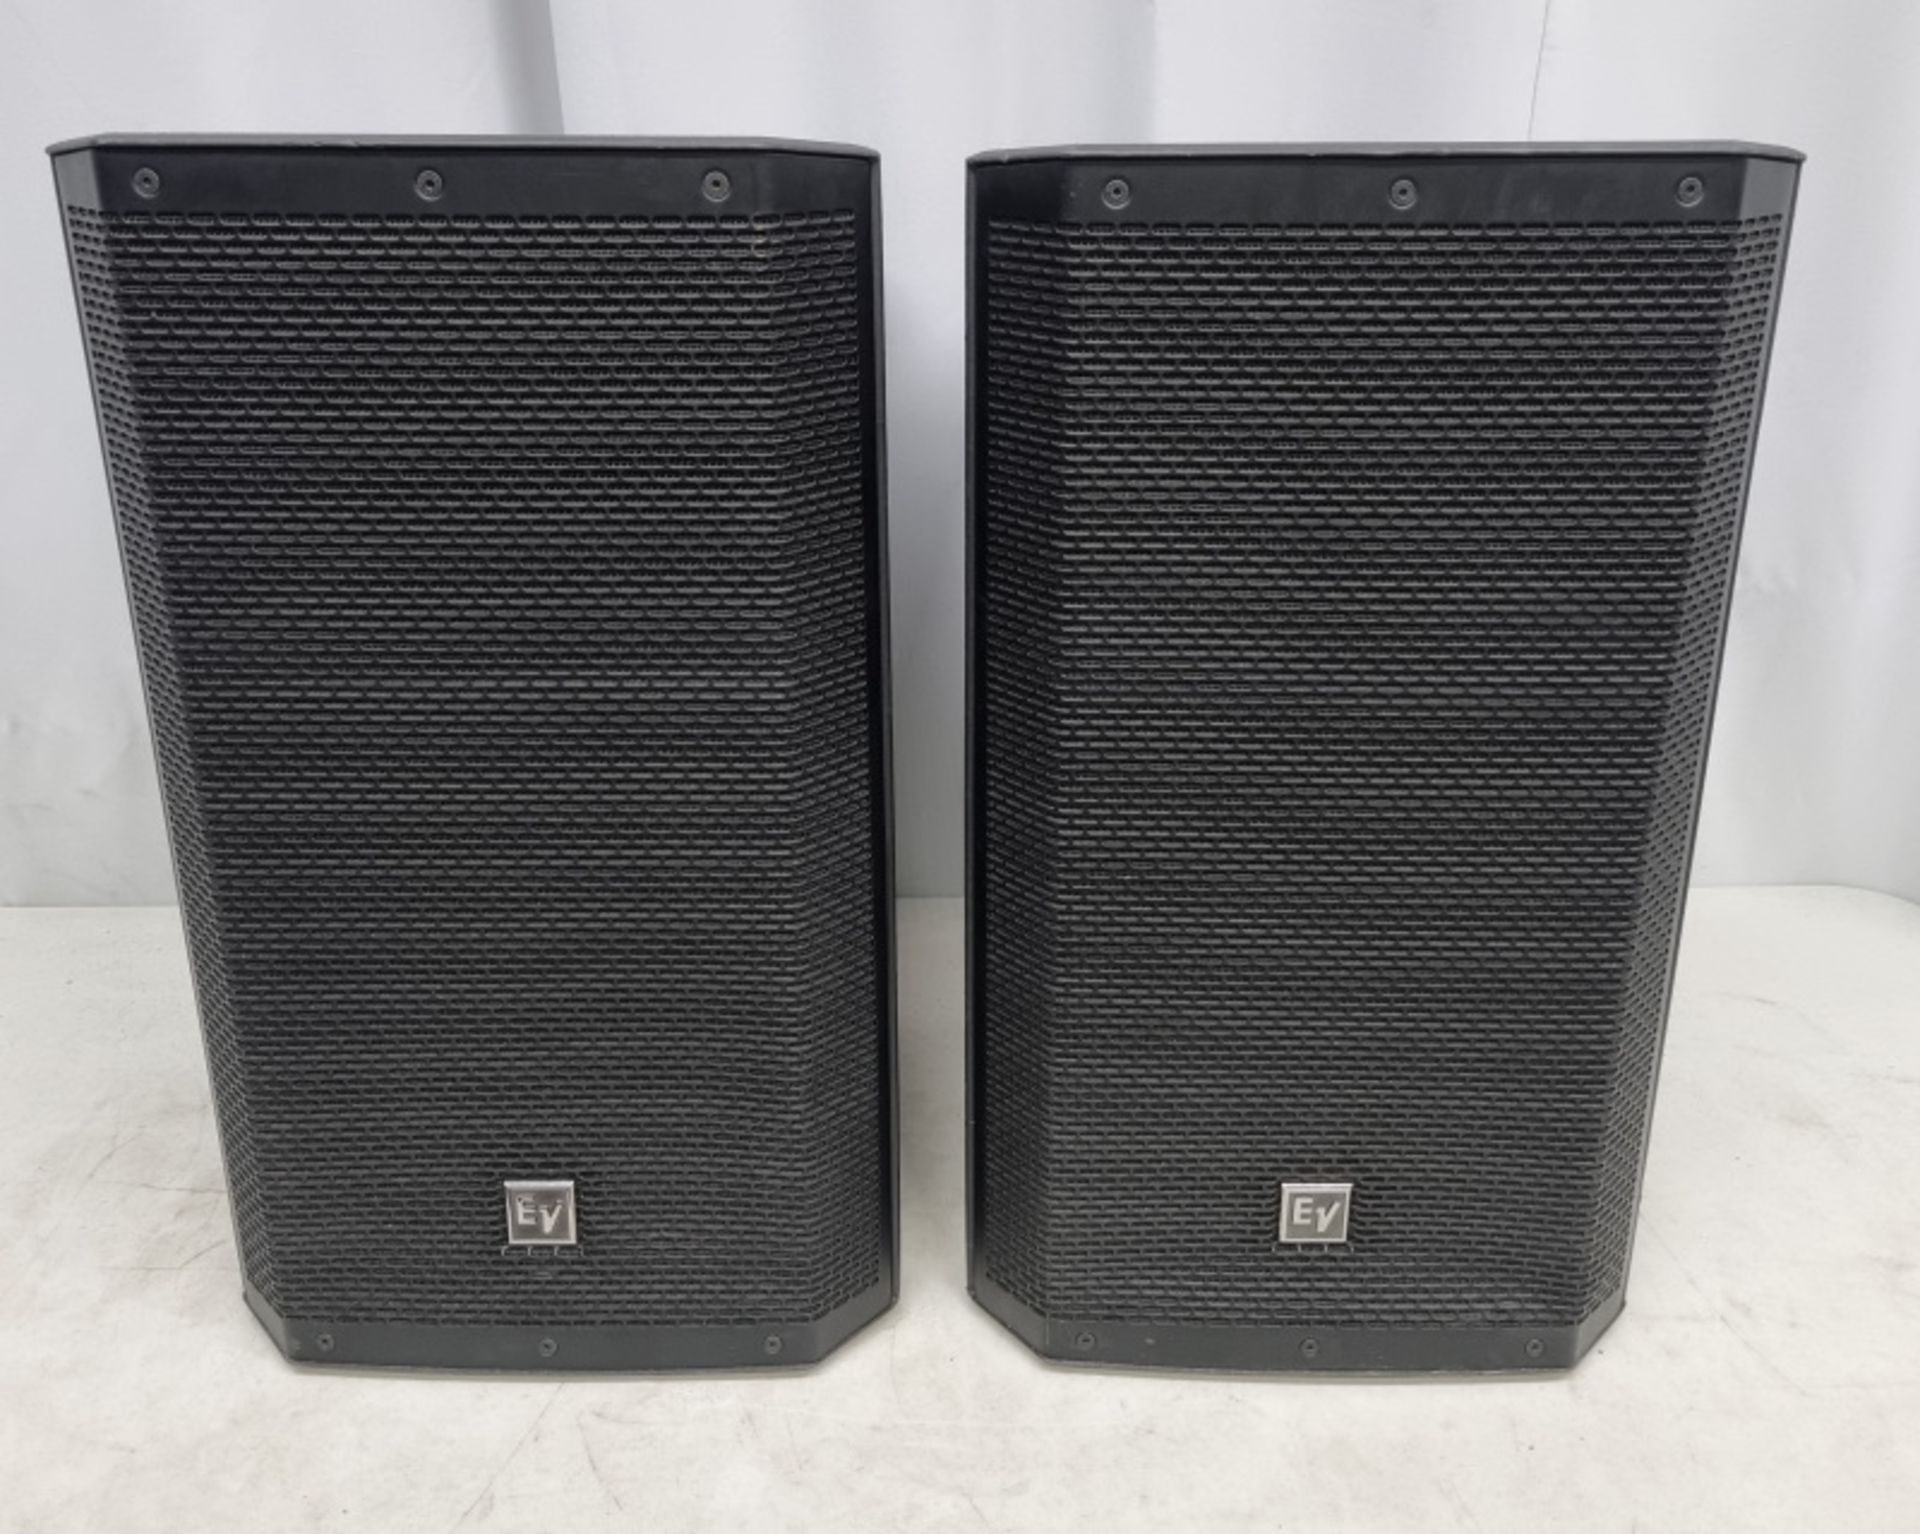 2 x EVZLX-12P speakers